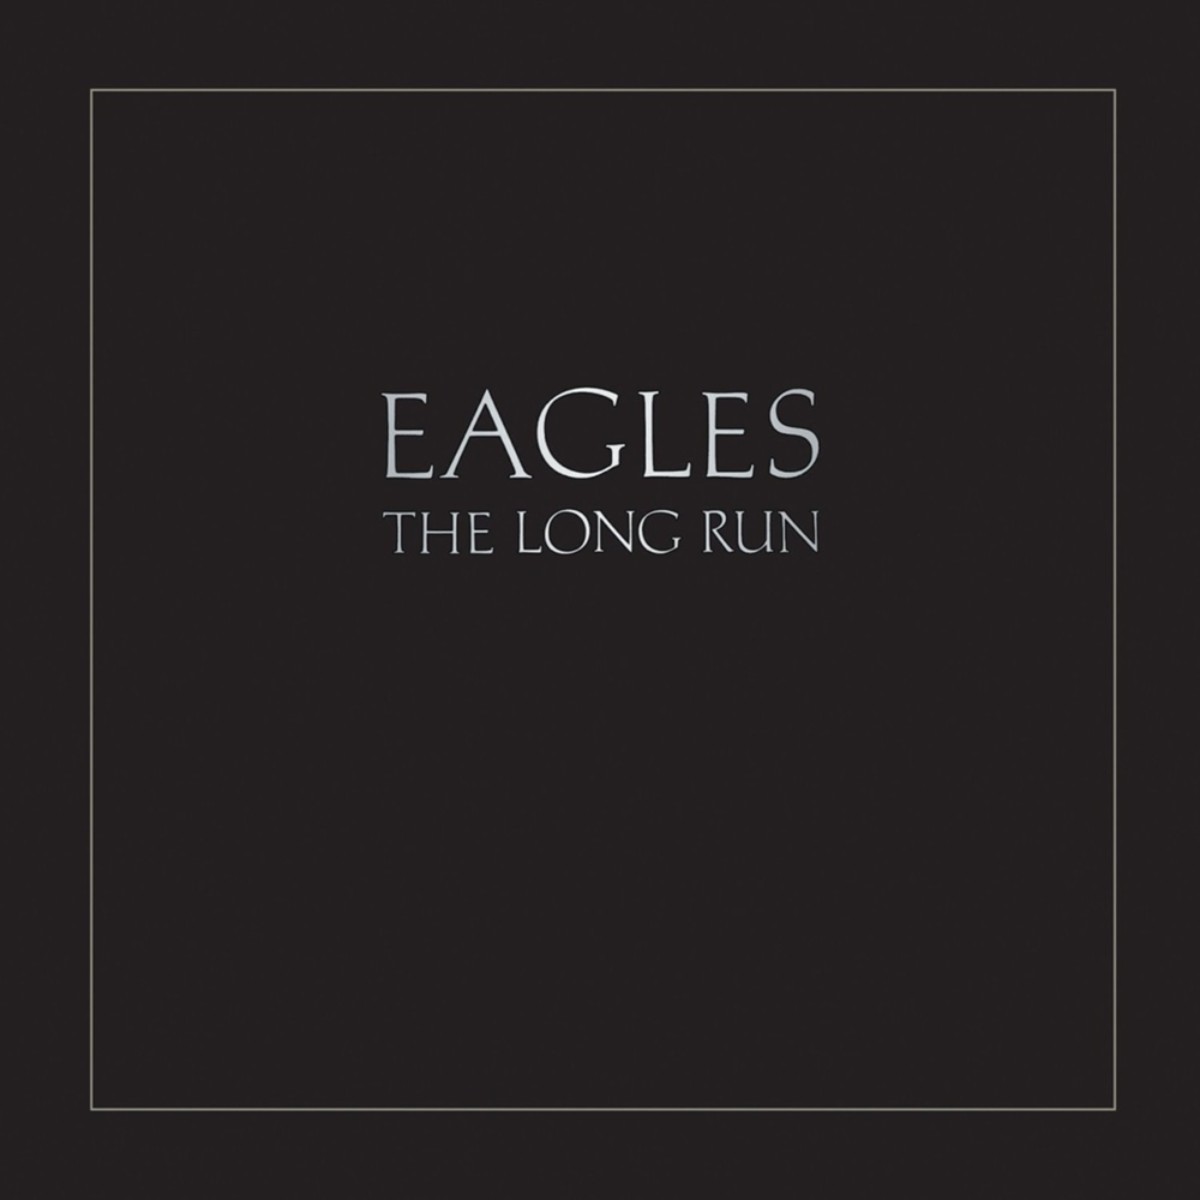 The Eagles, альбом «The Long Run»